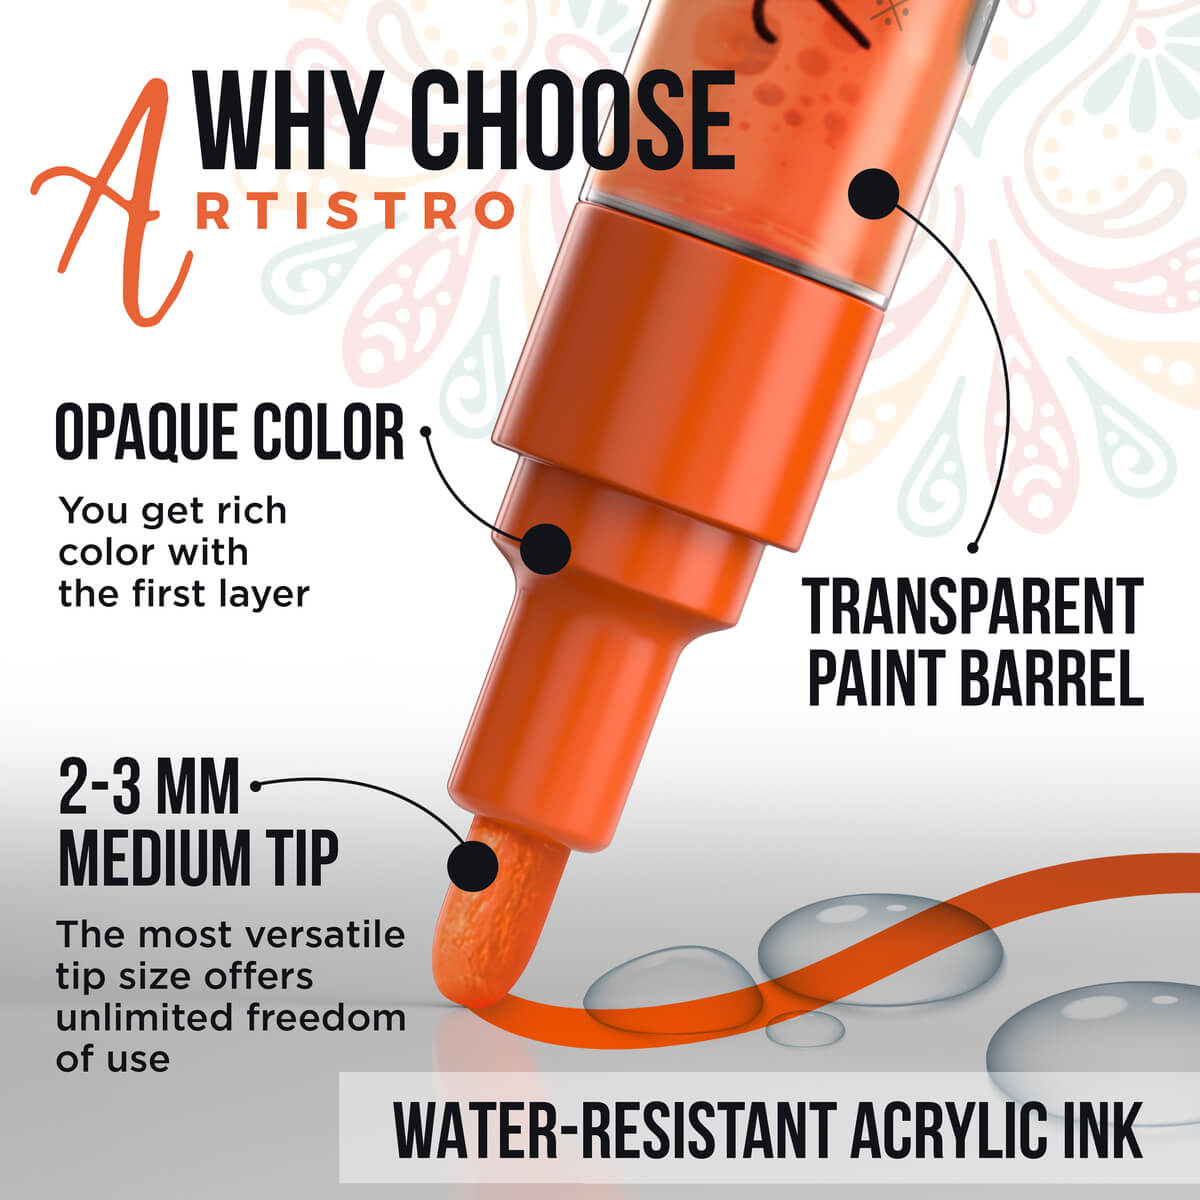 benefits: opaque color, transparent paint barrel, 2-3mm medium tip